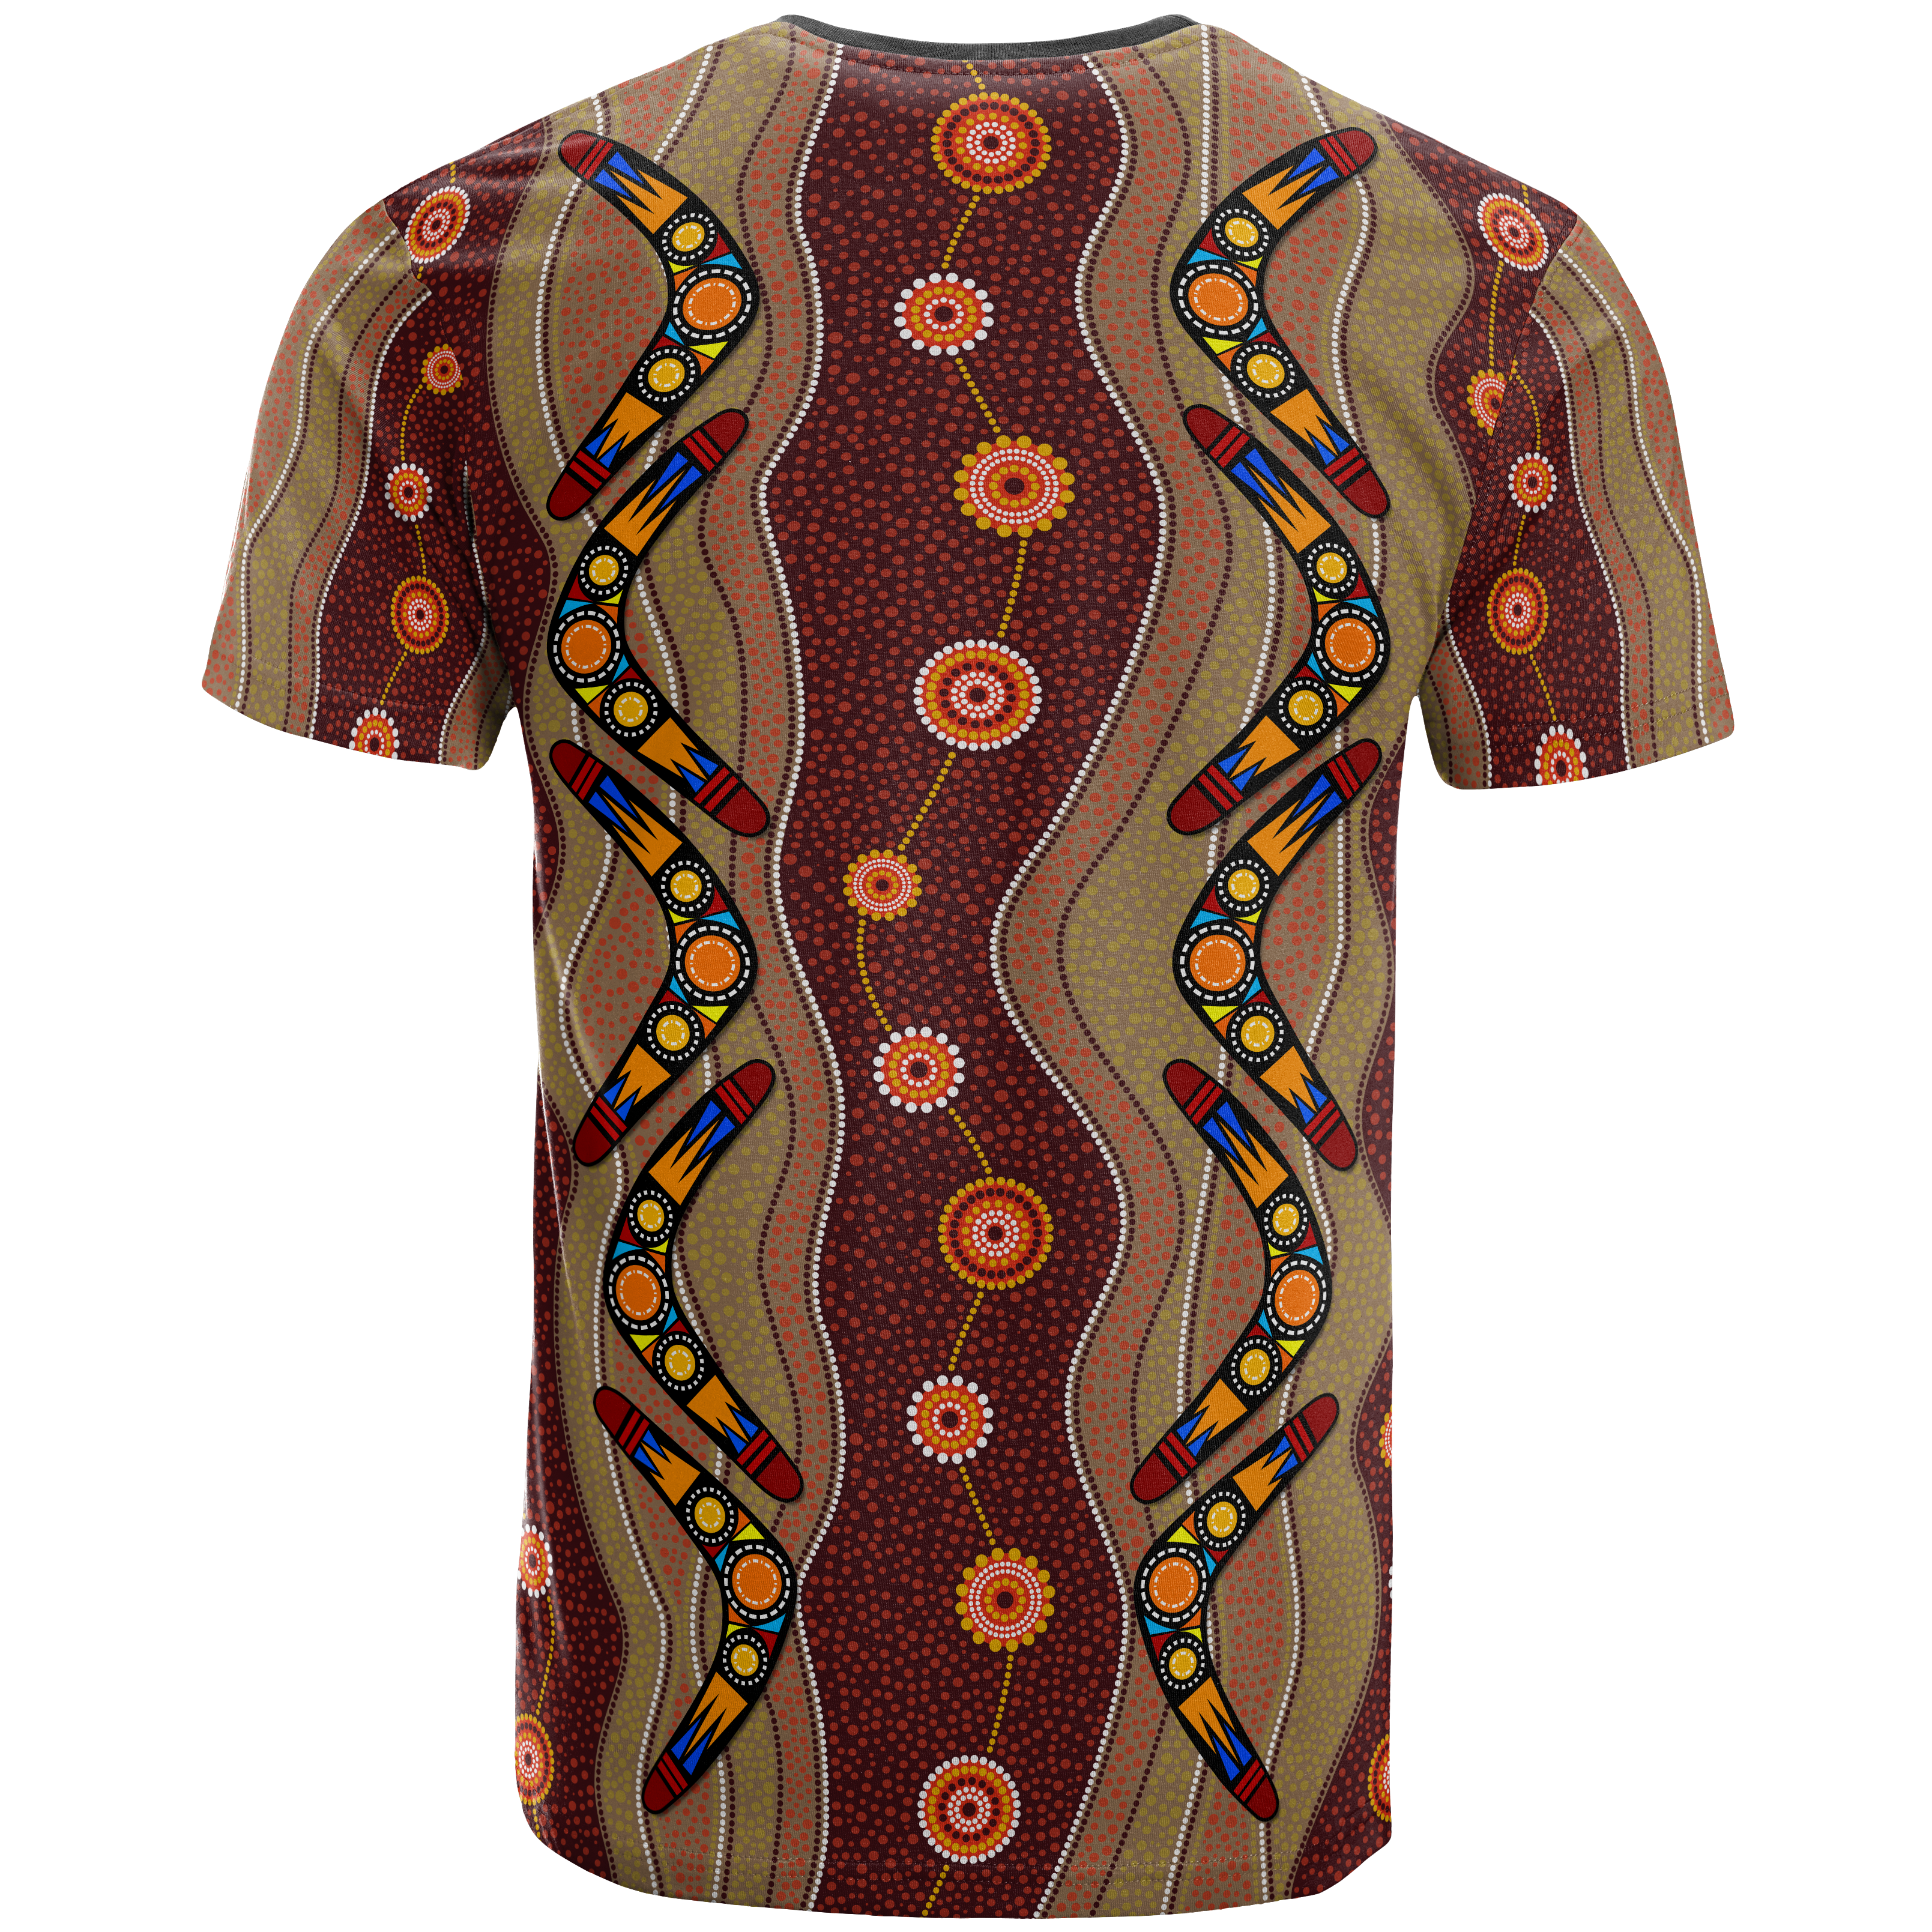 aboriginal-t-shirt-boomerang-patterns-circle-dot-painting